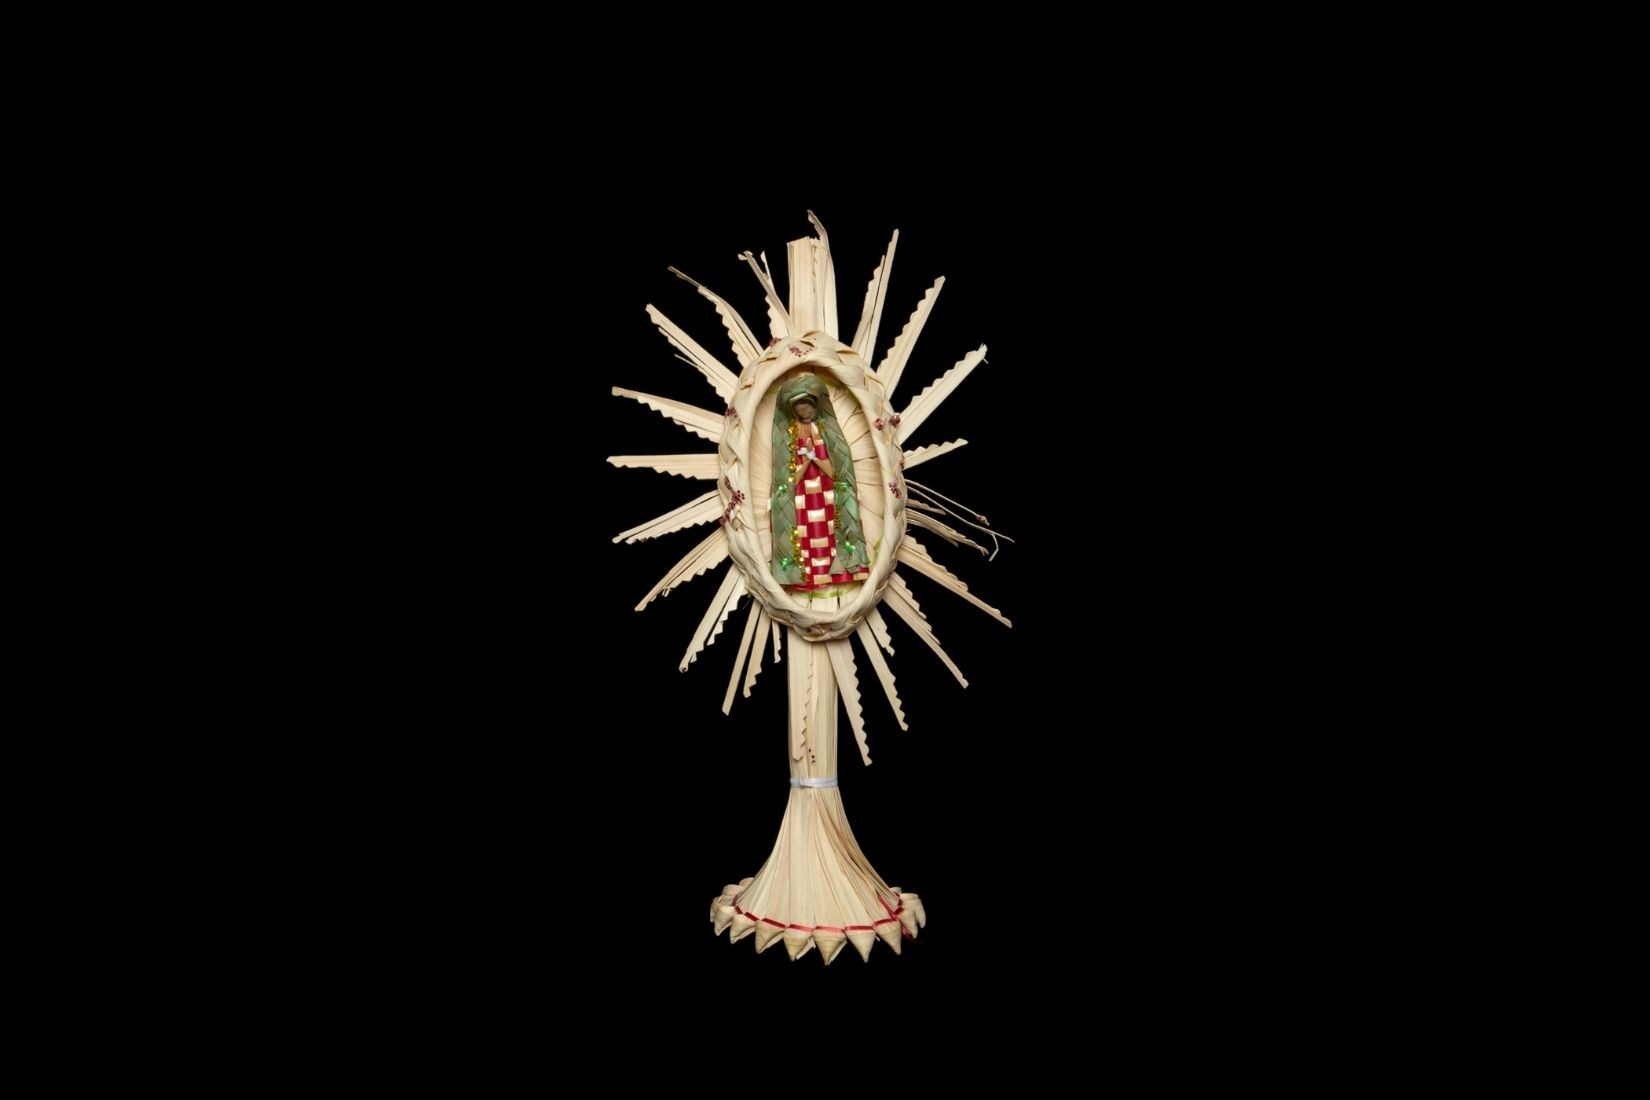 Vírgen de Guadalupe de palma tejida y teñida. Artesano y procedencia desconocidos. Col. Marie Thérèse Hermand de Arango. (Foto: EKV).